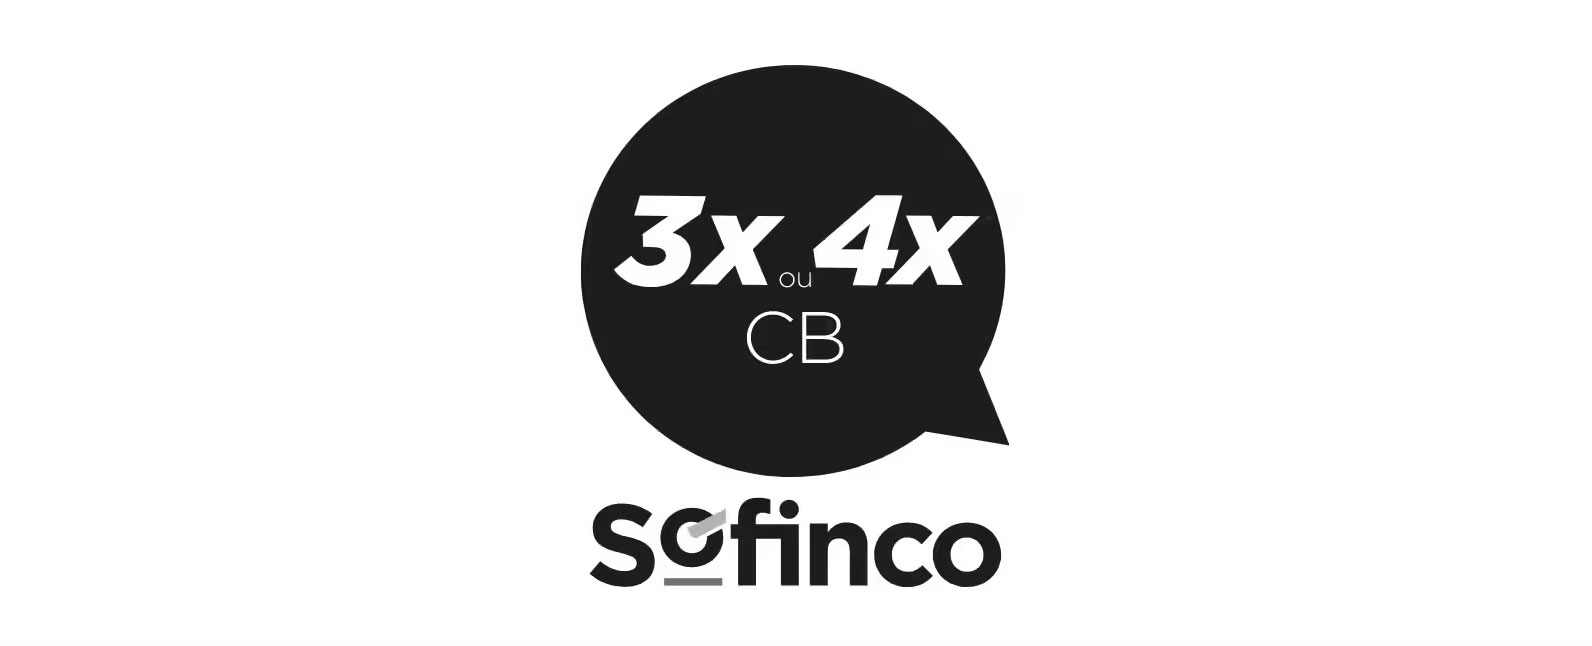 3x ou 4x CB Sofinco